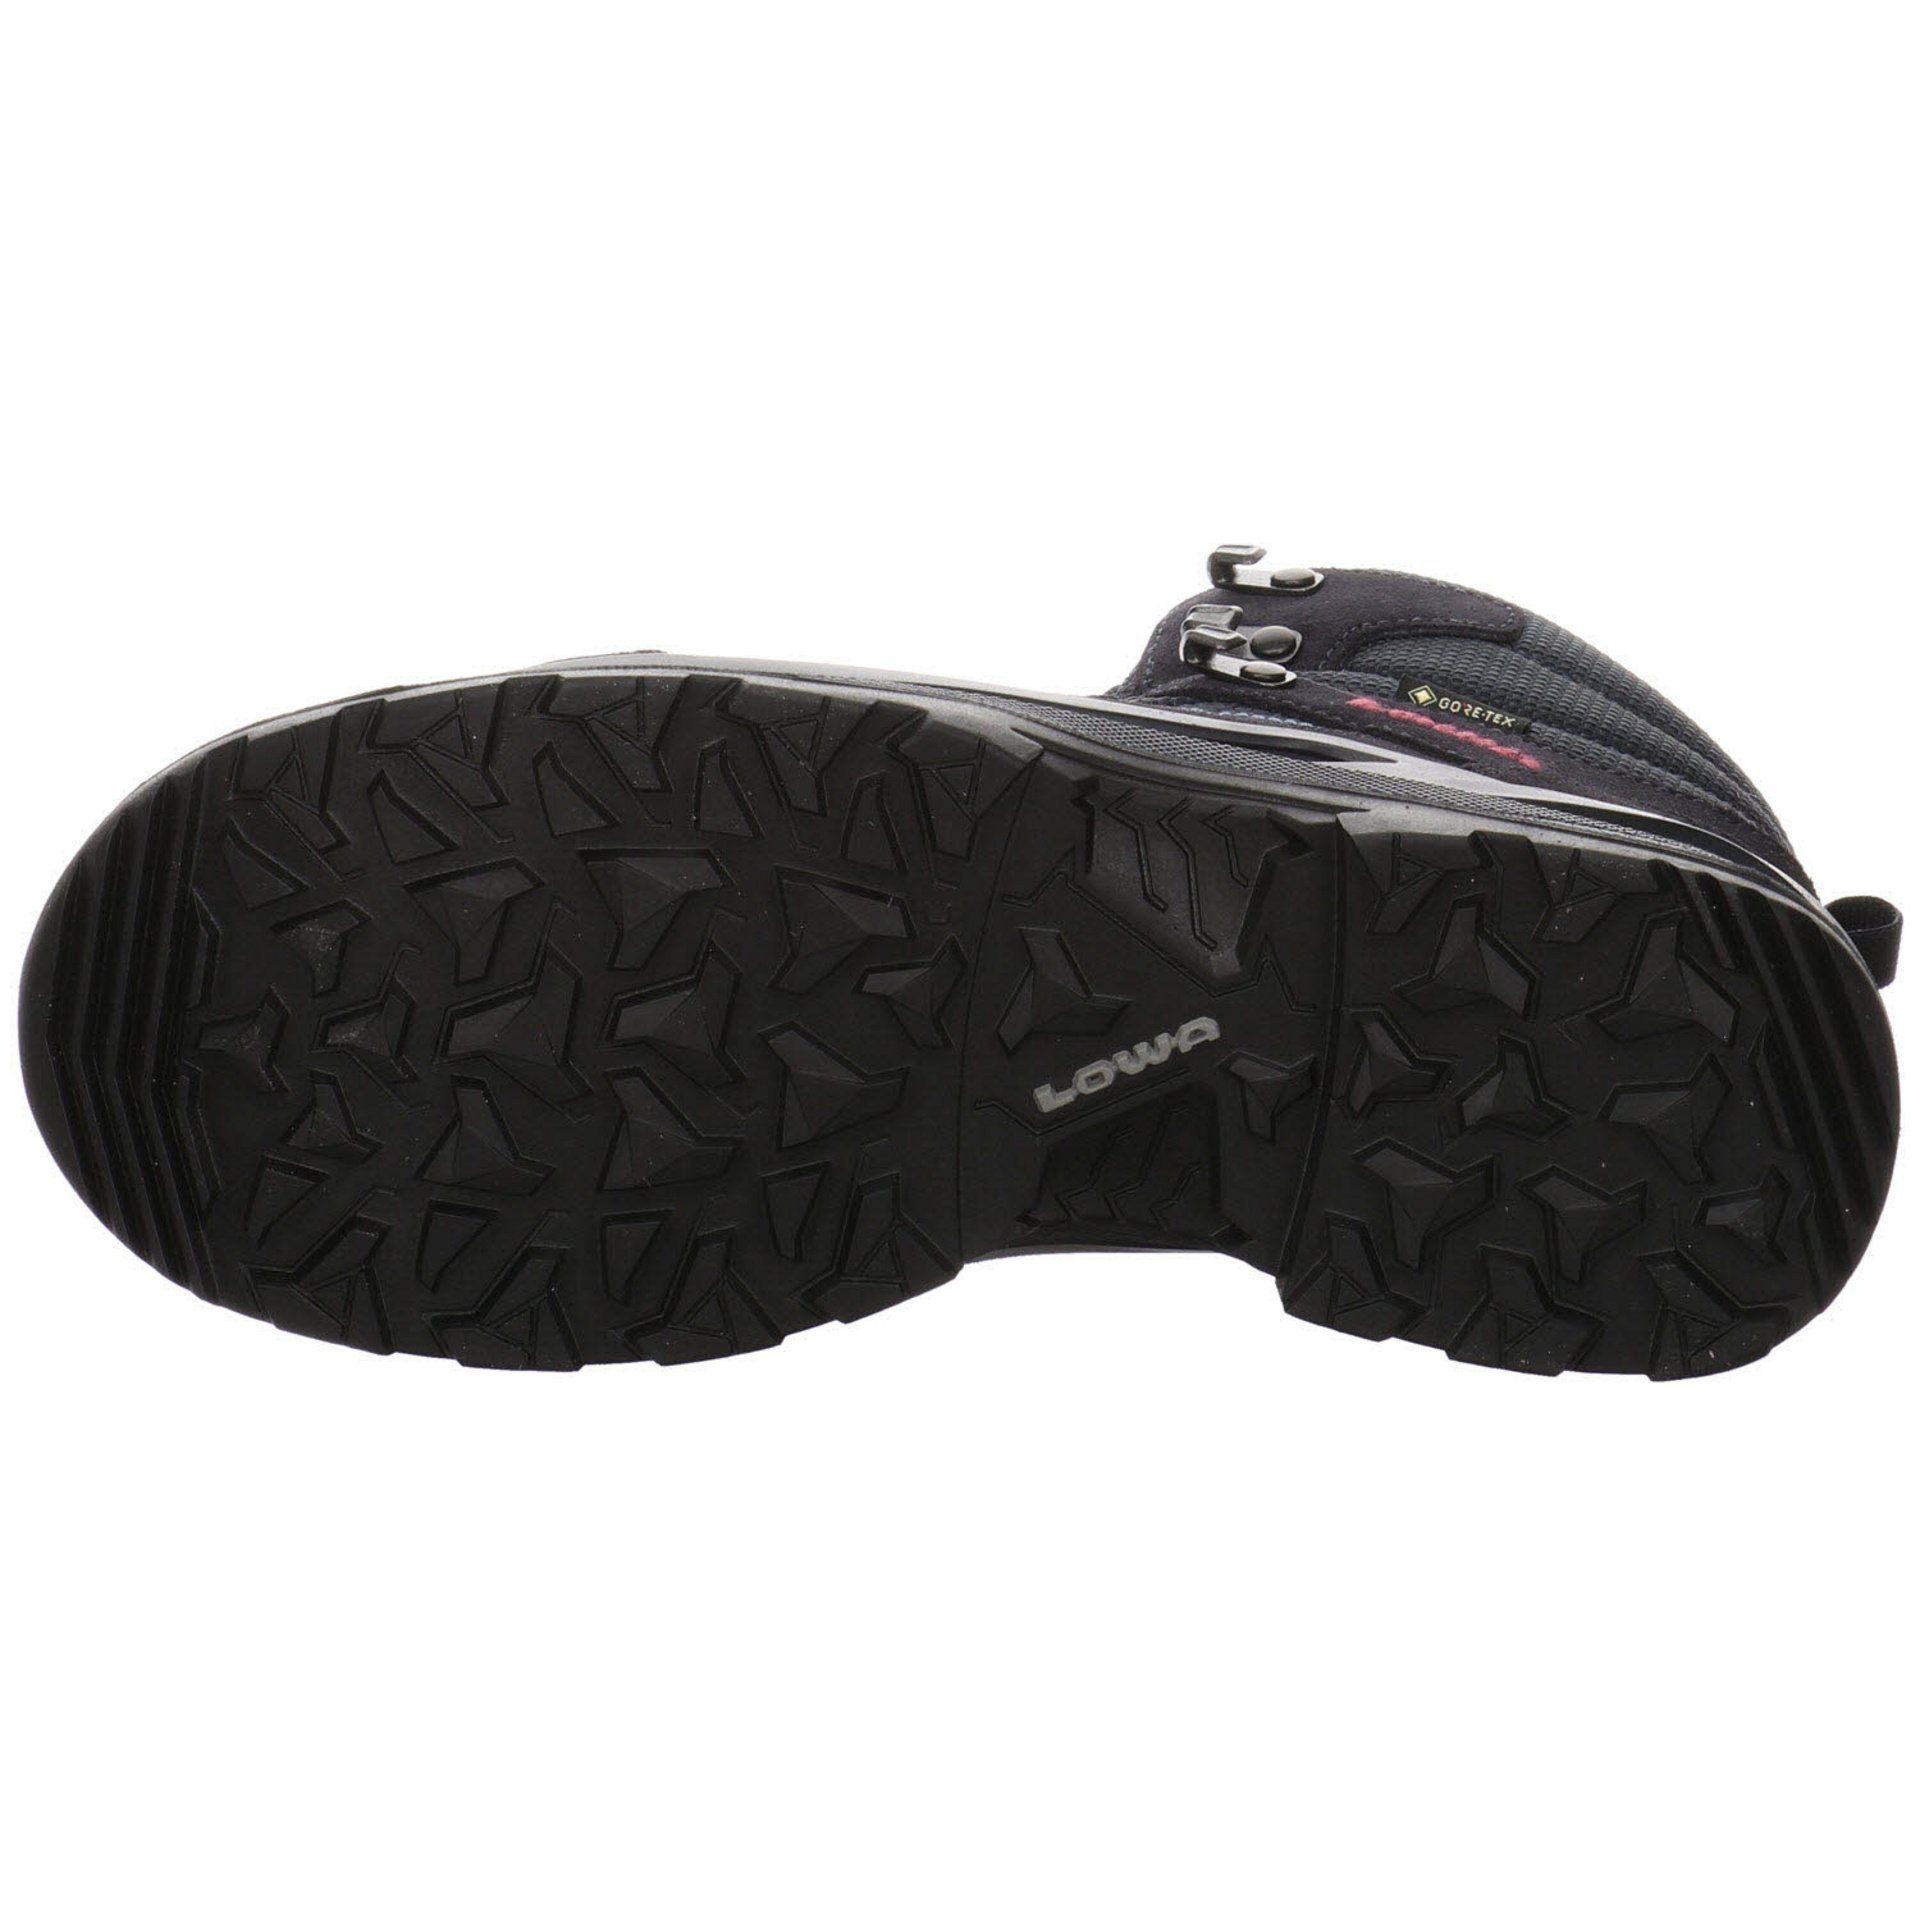 Outdoorschuh NAVY Lowa Damen Outdoor Leder-/Textilkombination Schuhe